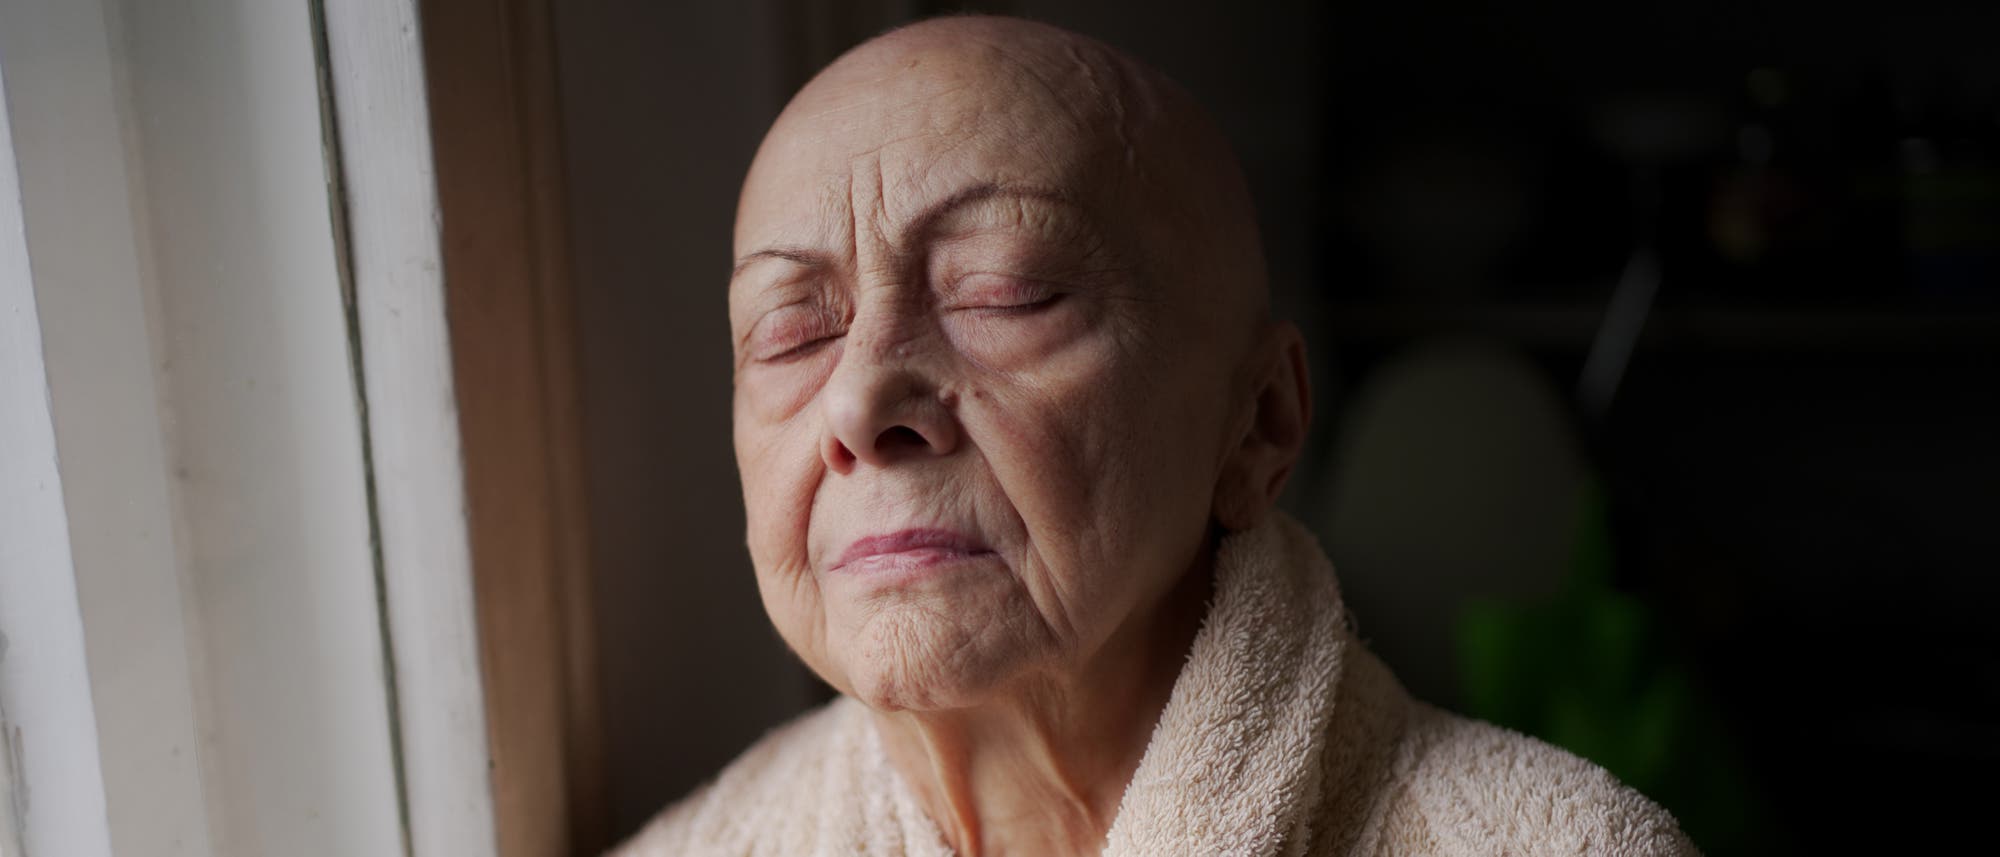 Porträt einer älteren Frau ohne Haare, die im Bademantel am Fenster steht und dabei die Augen geschlossen hat